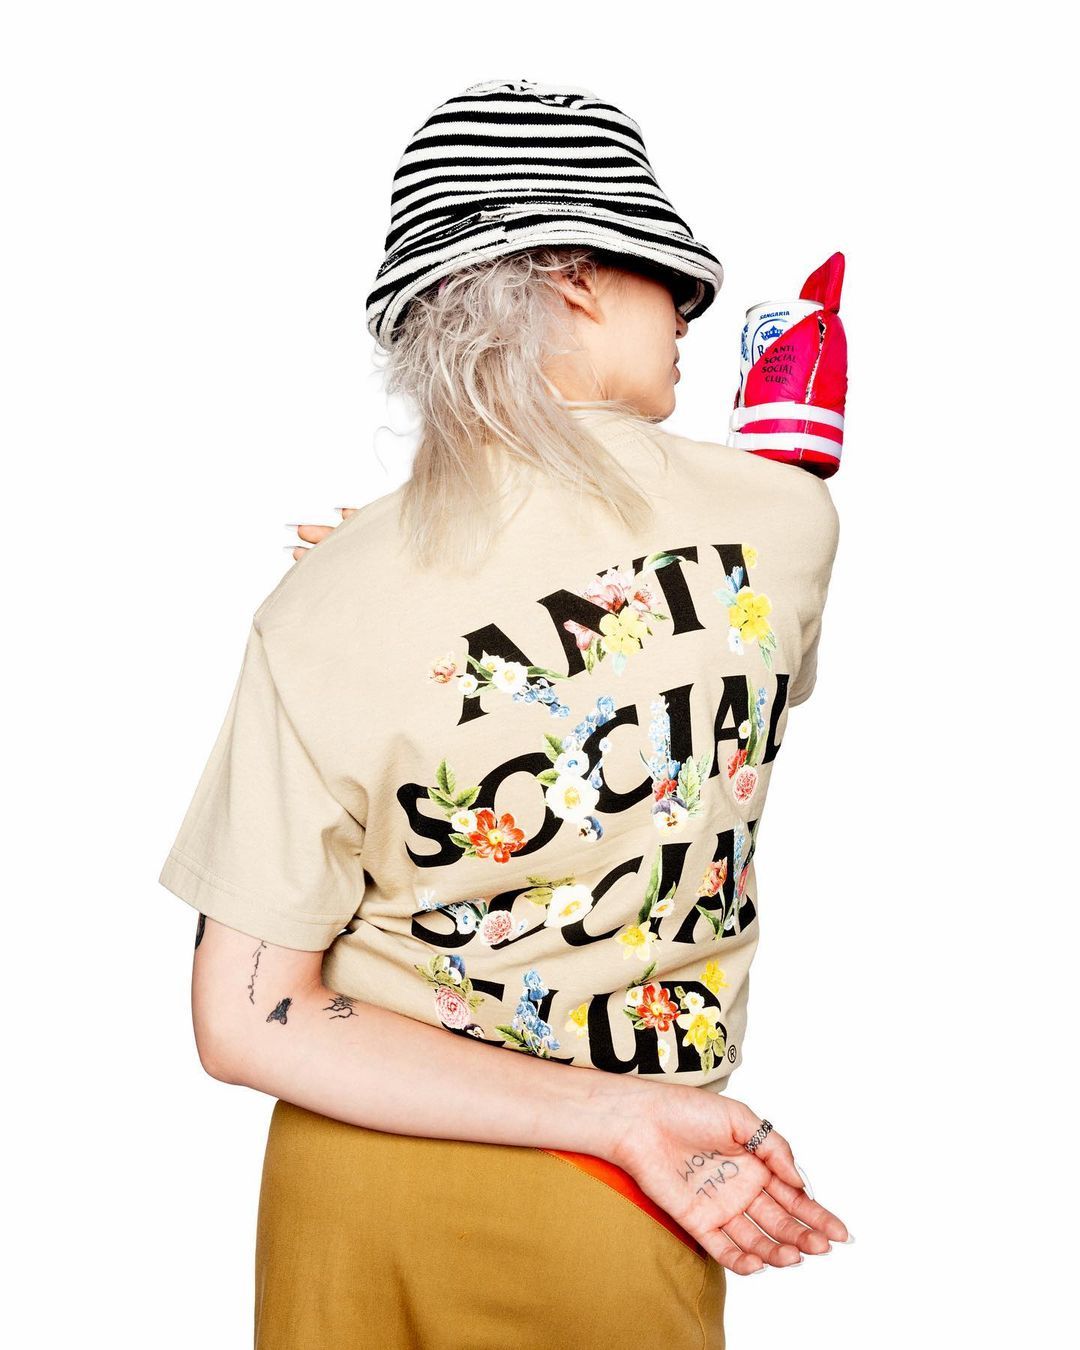 Anti Social Social Club Diakusisi oleh Marquee Brands